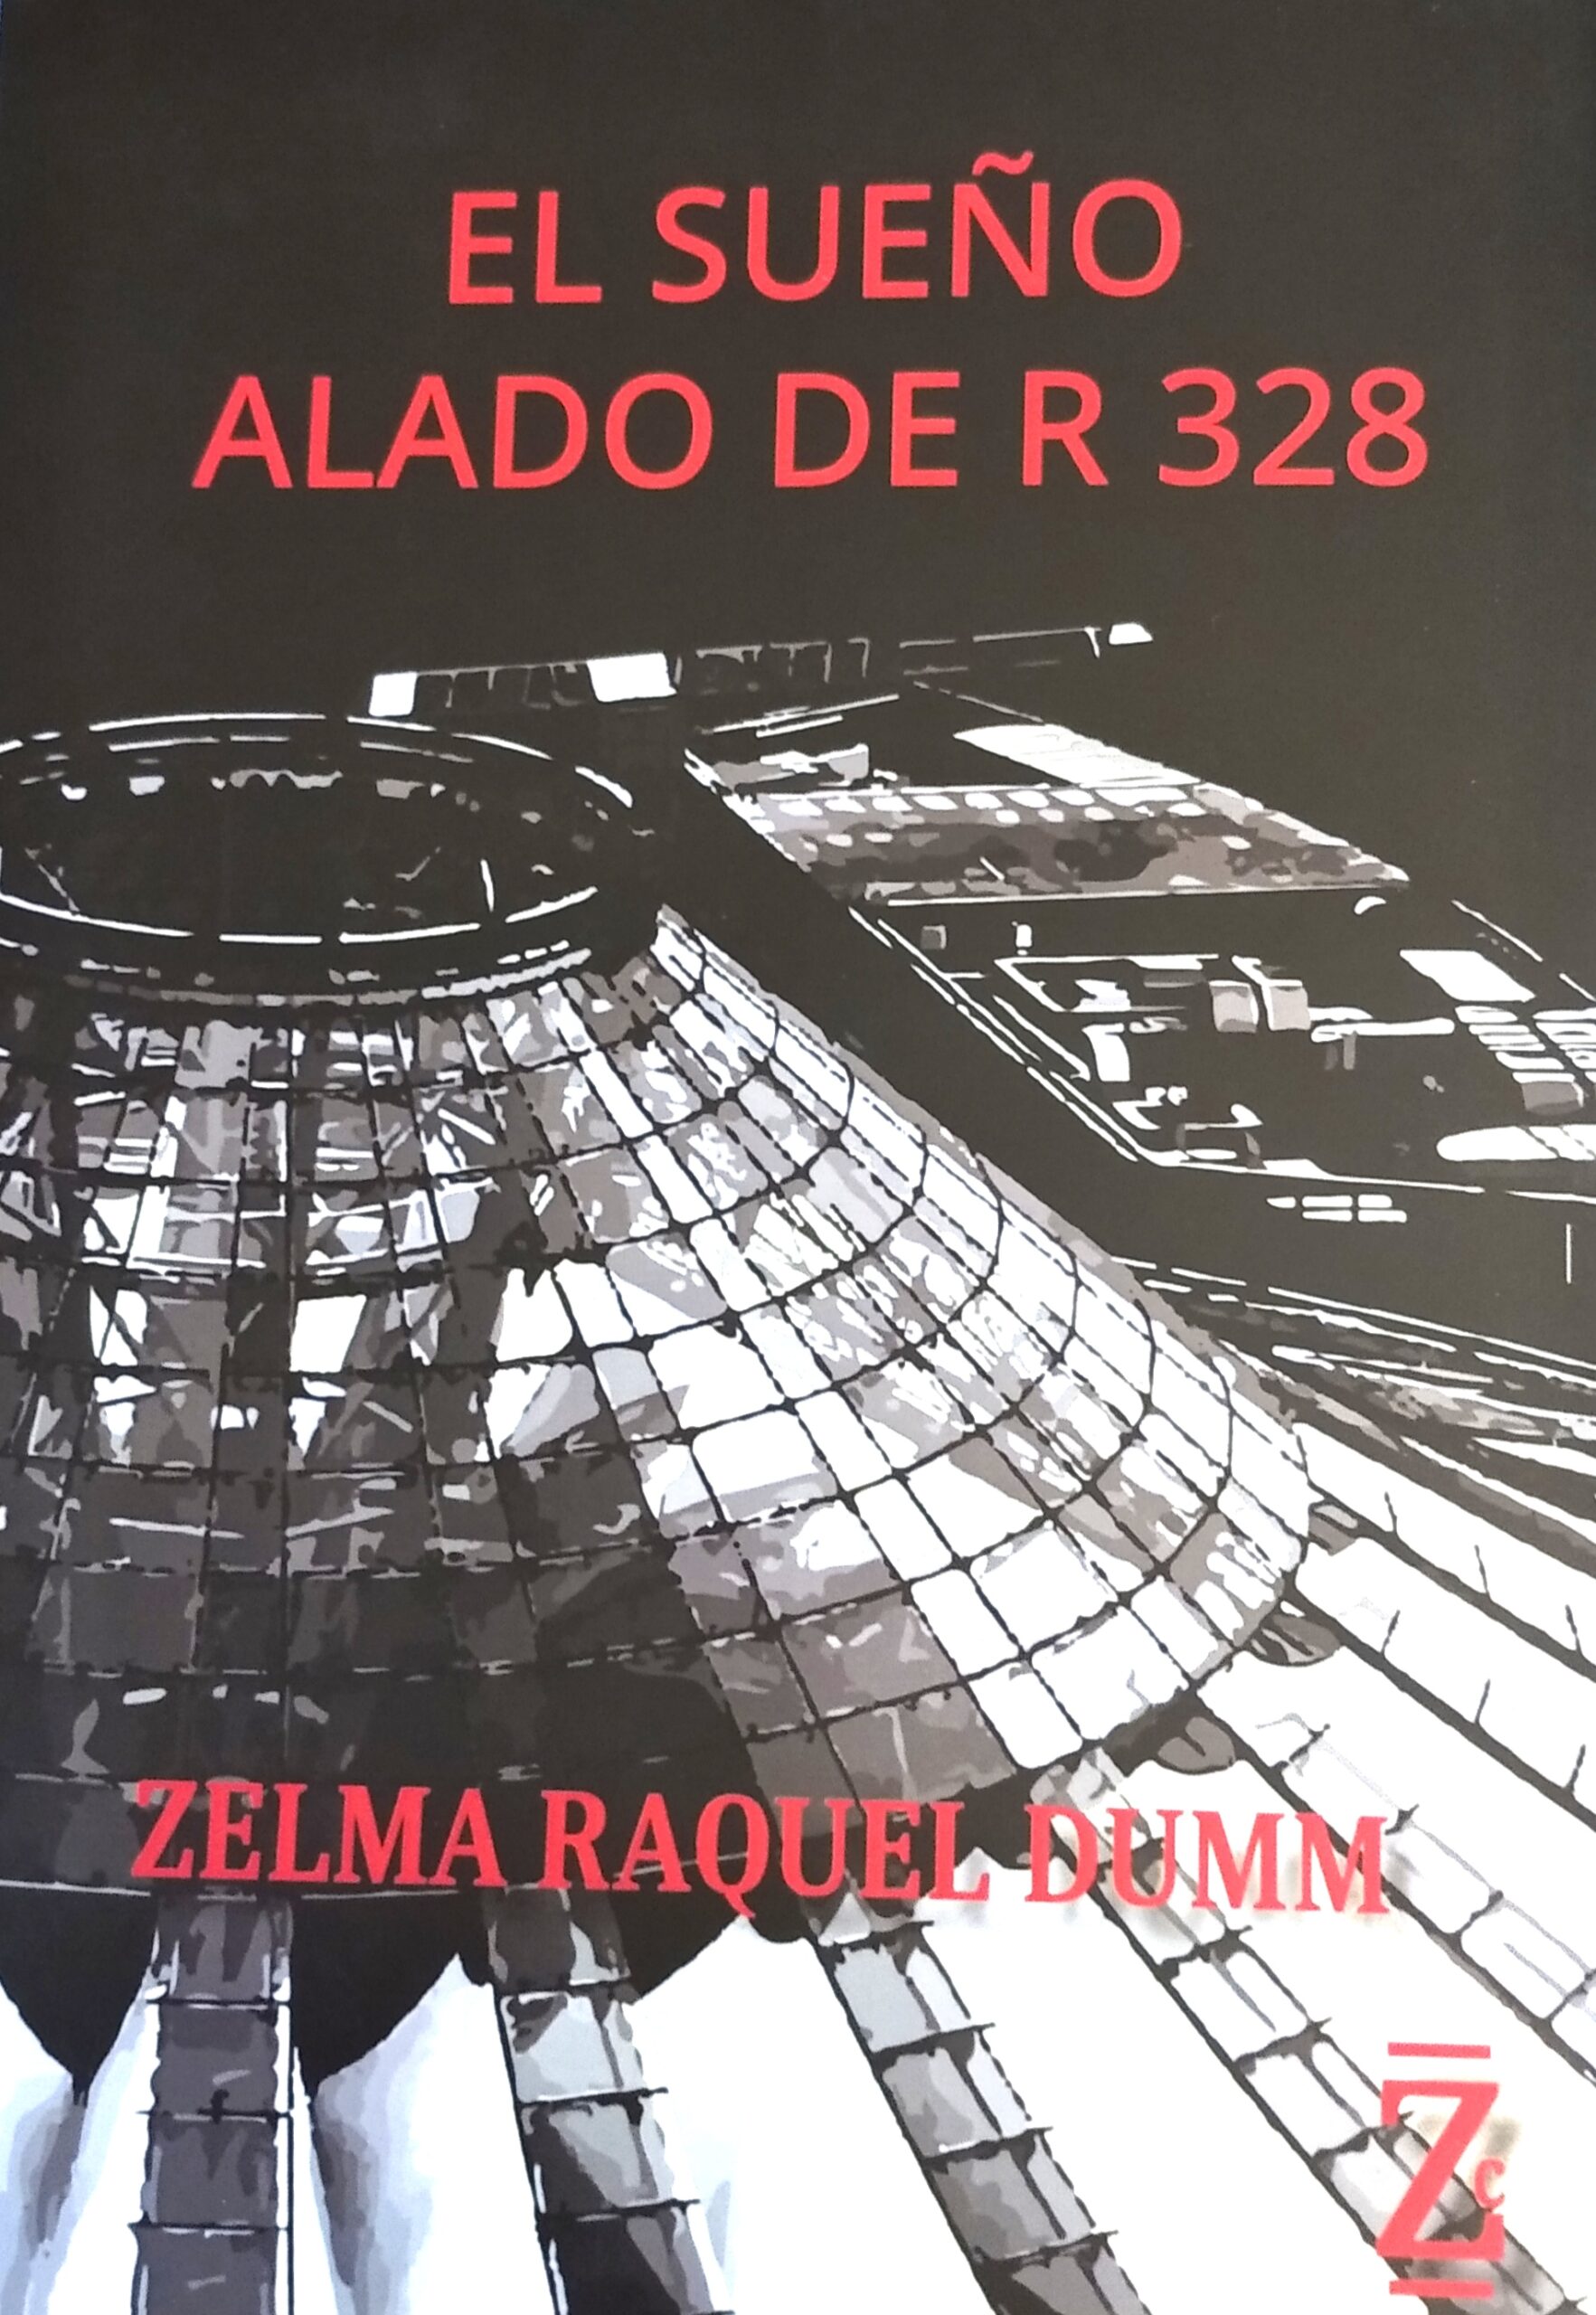 Tapa del libro "El sueño alado de R 328", de Zelma Raquel Dumm 